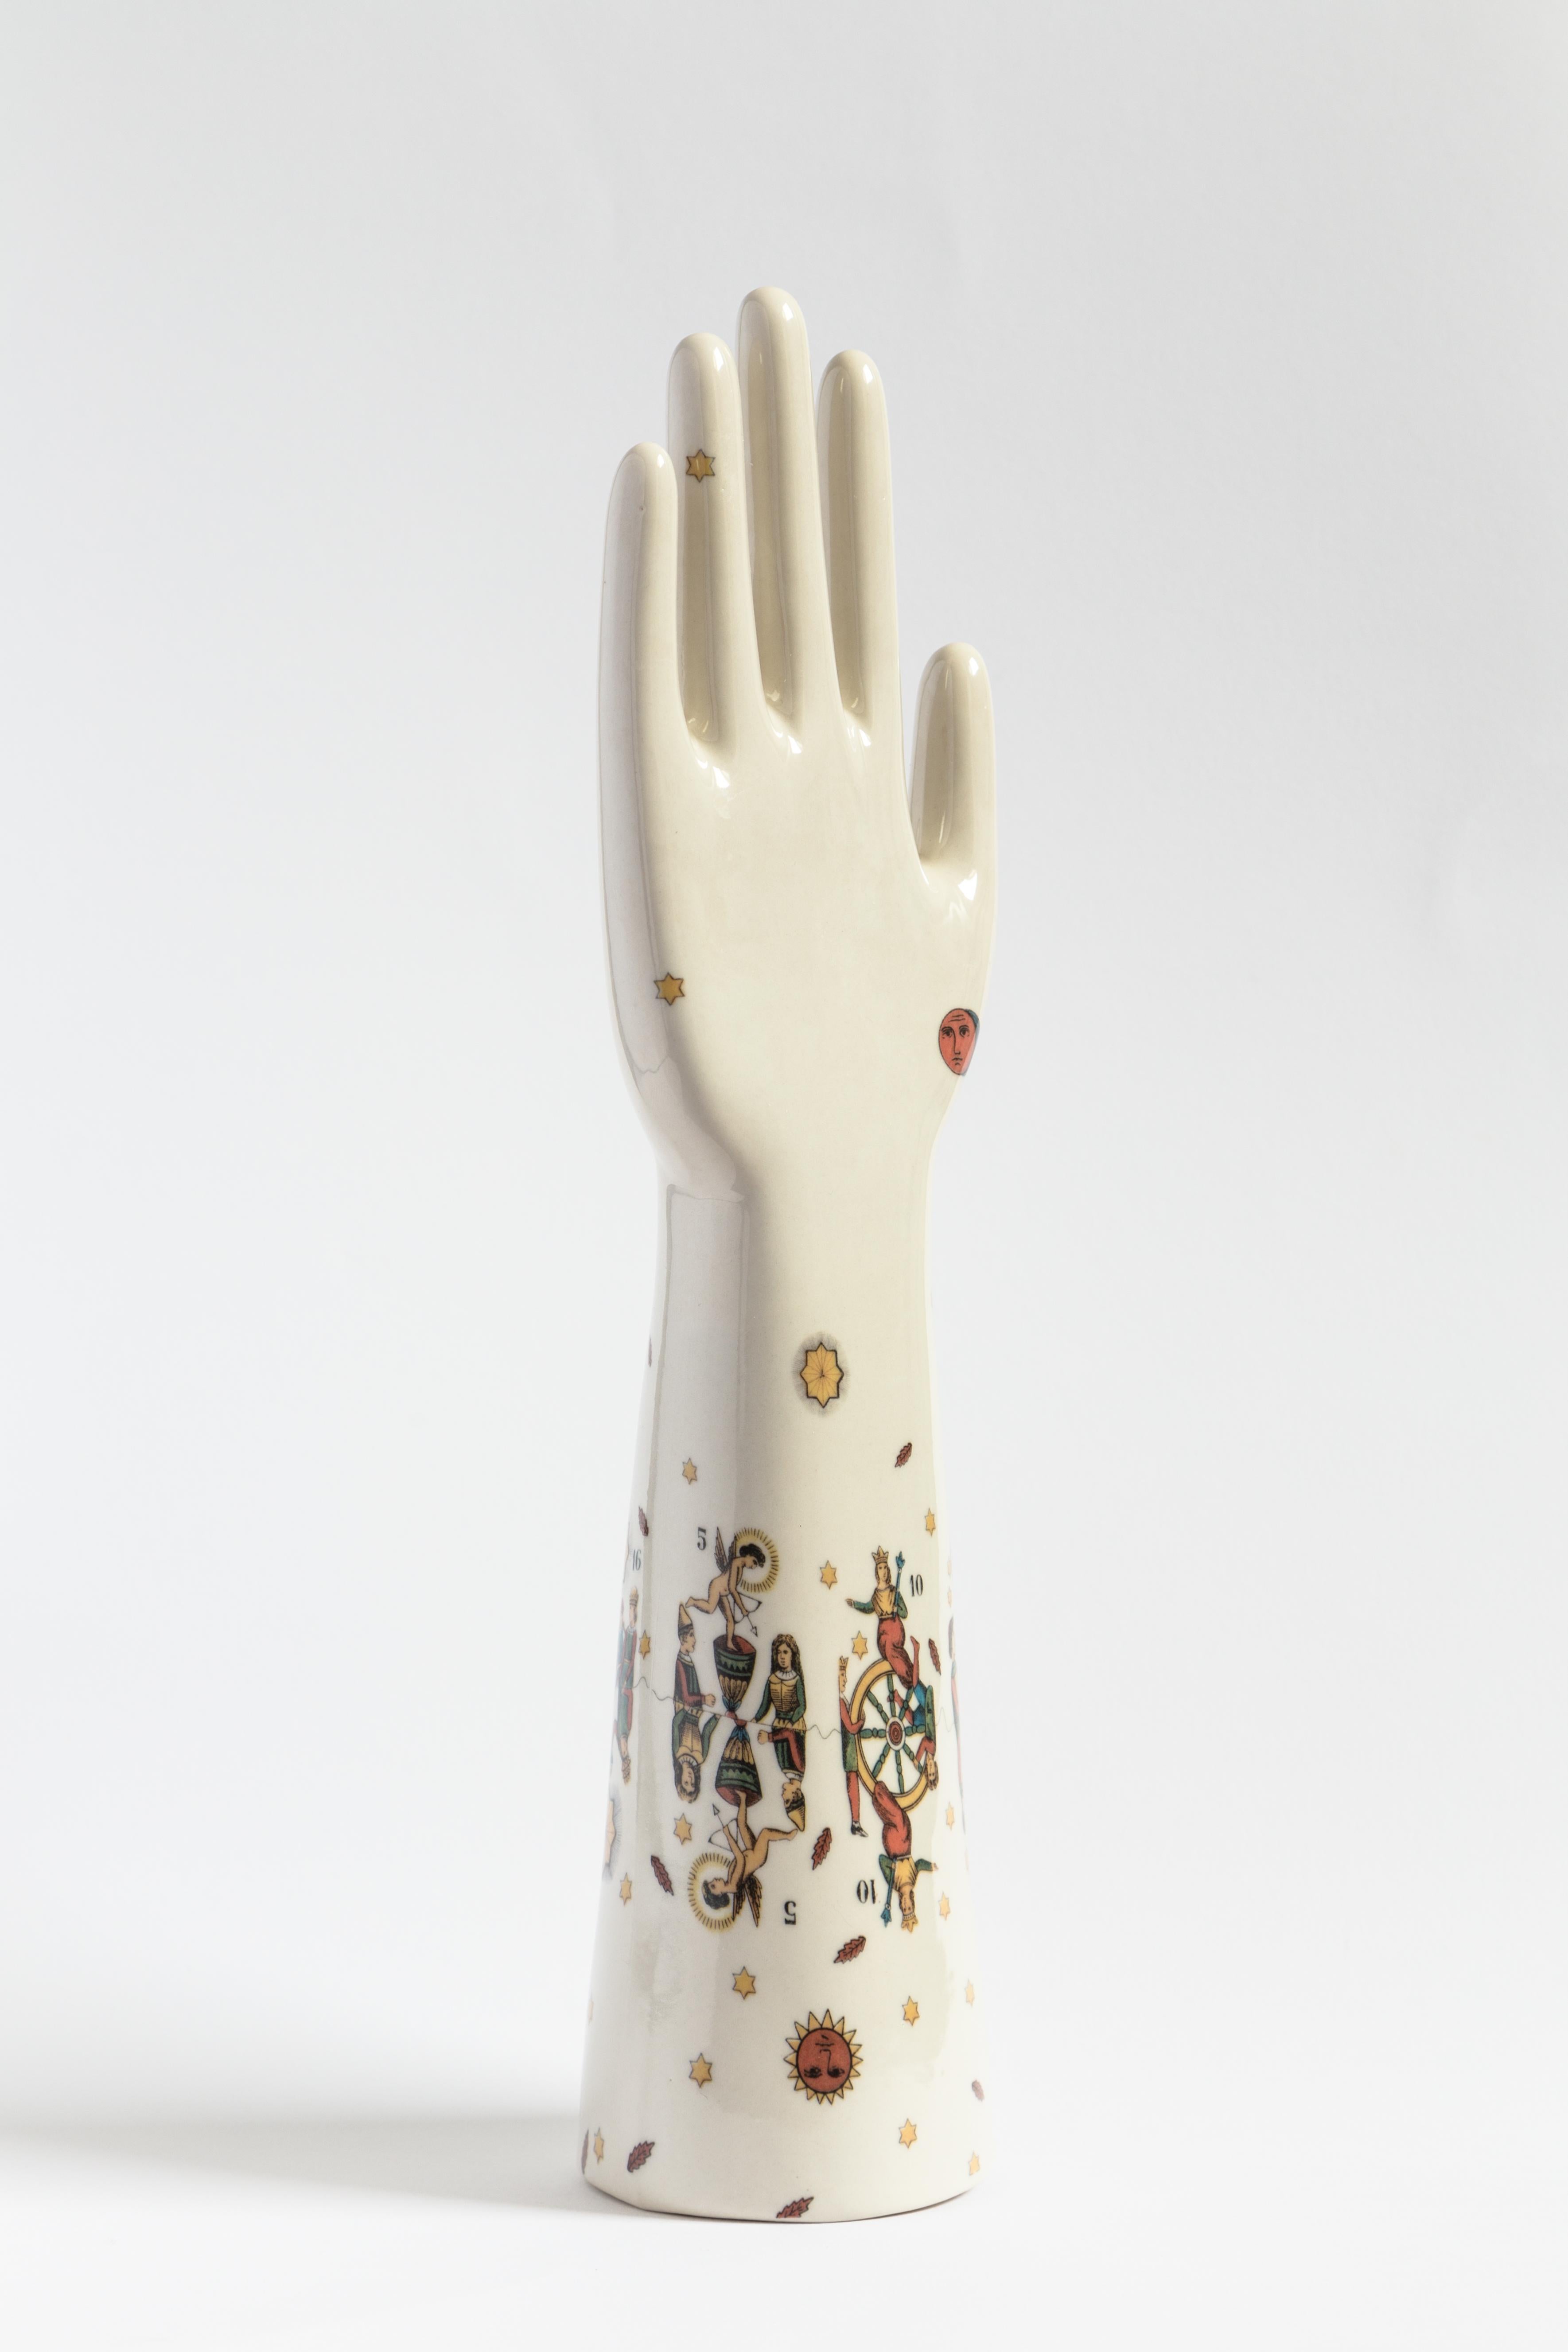 Diese auffällige Skulptur ist Teil der Serie Anatomica von Vito Nesta, die dekorative Objekte mit einfachen und essentiellen anatomischen Formen umfasst, die sich durch kräftige, kontrastreiche Farben und modernes Flair auszeichnen. Die Skulptur aus